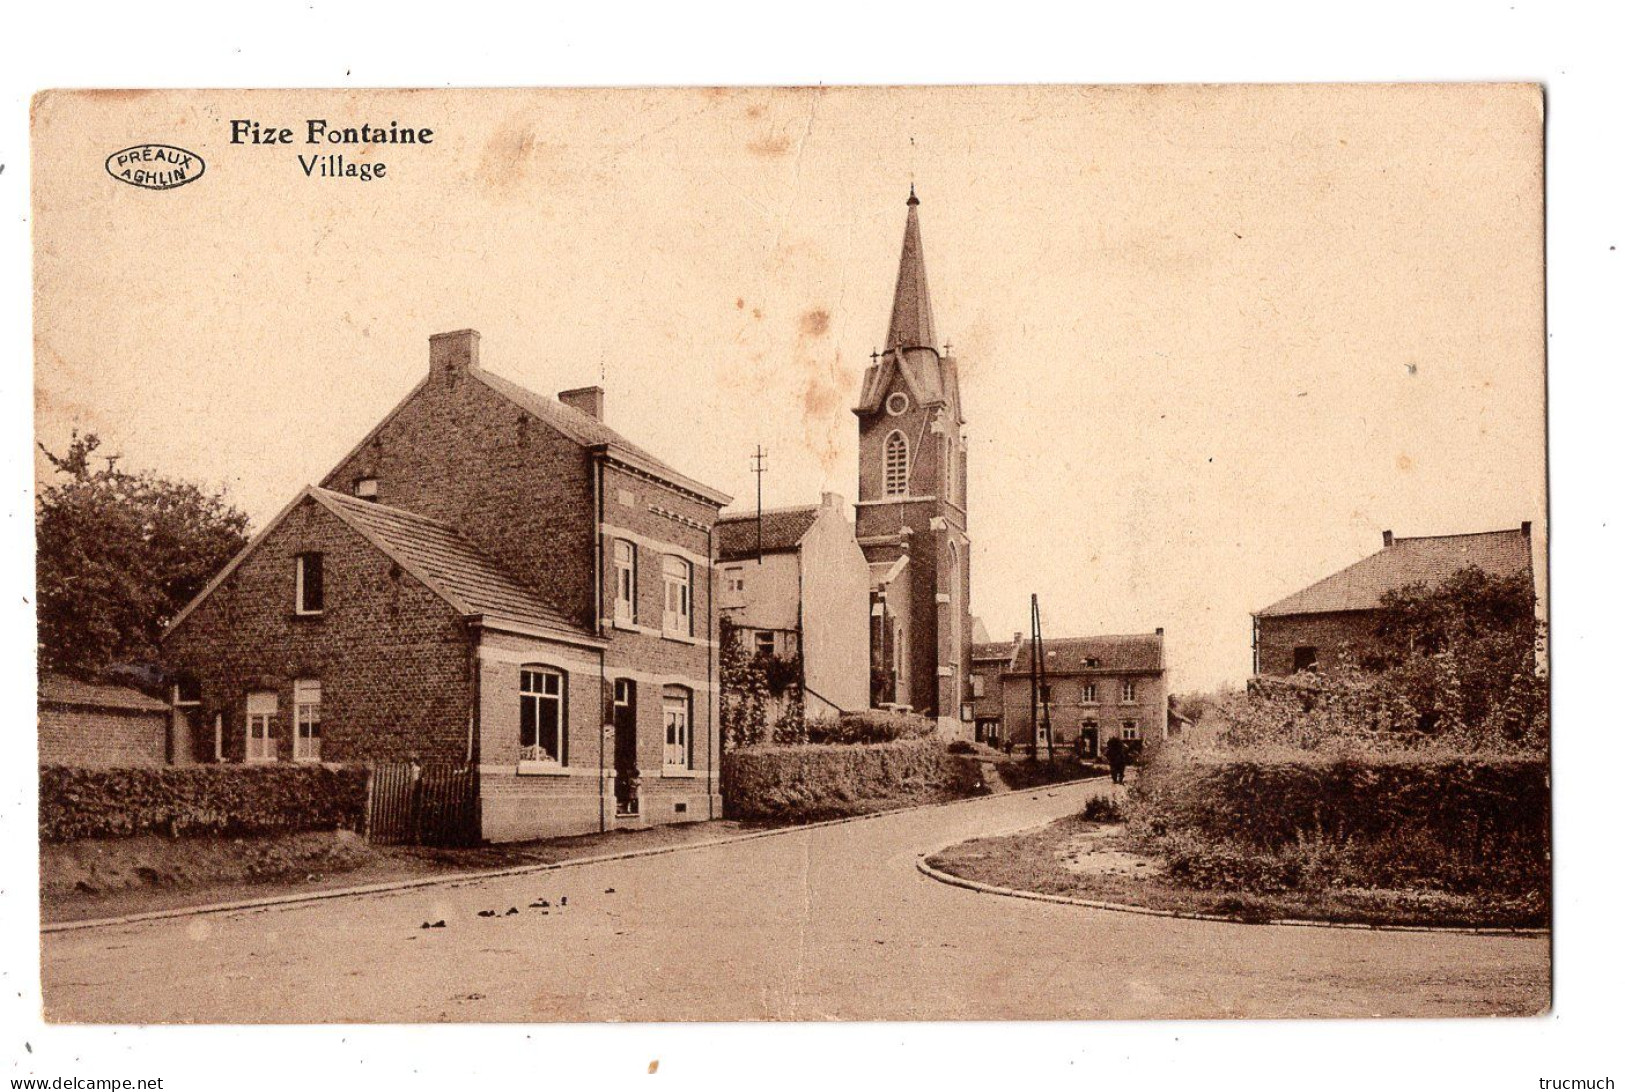 FIZE FONTAINE - Village - Villers-le-Bouillet